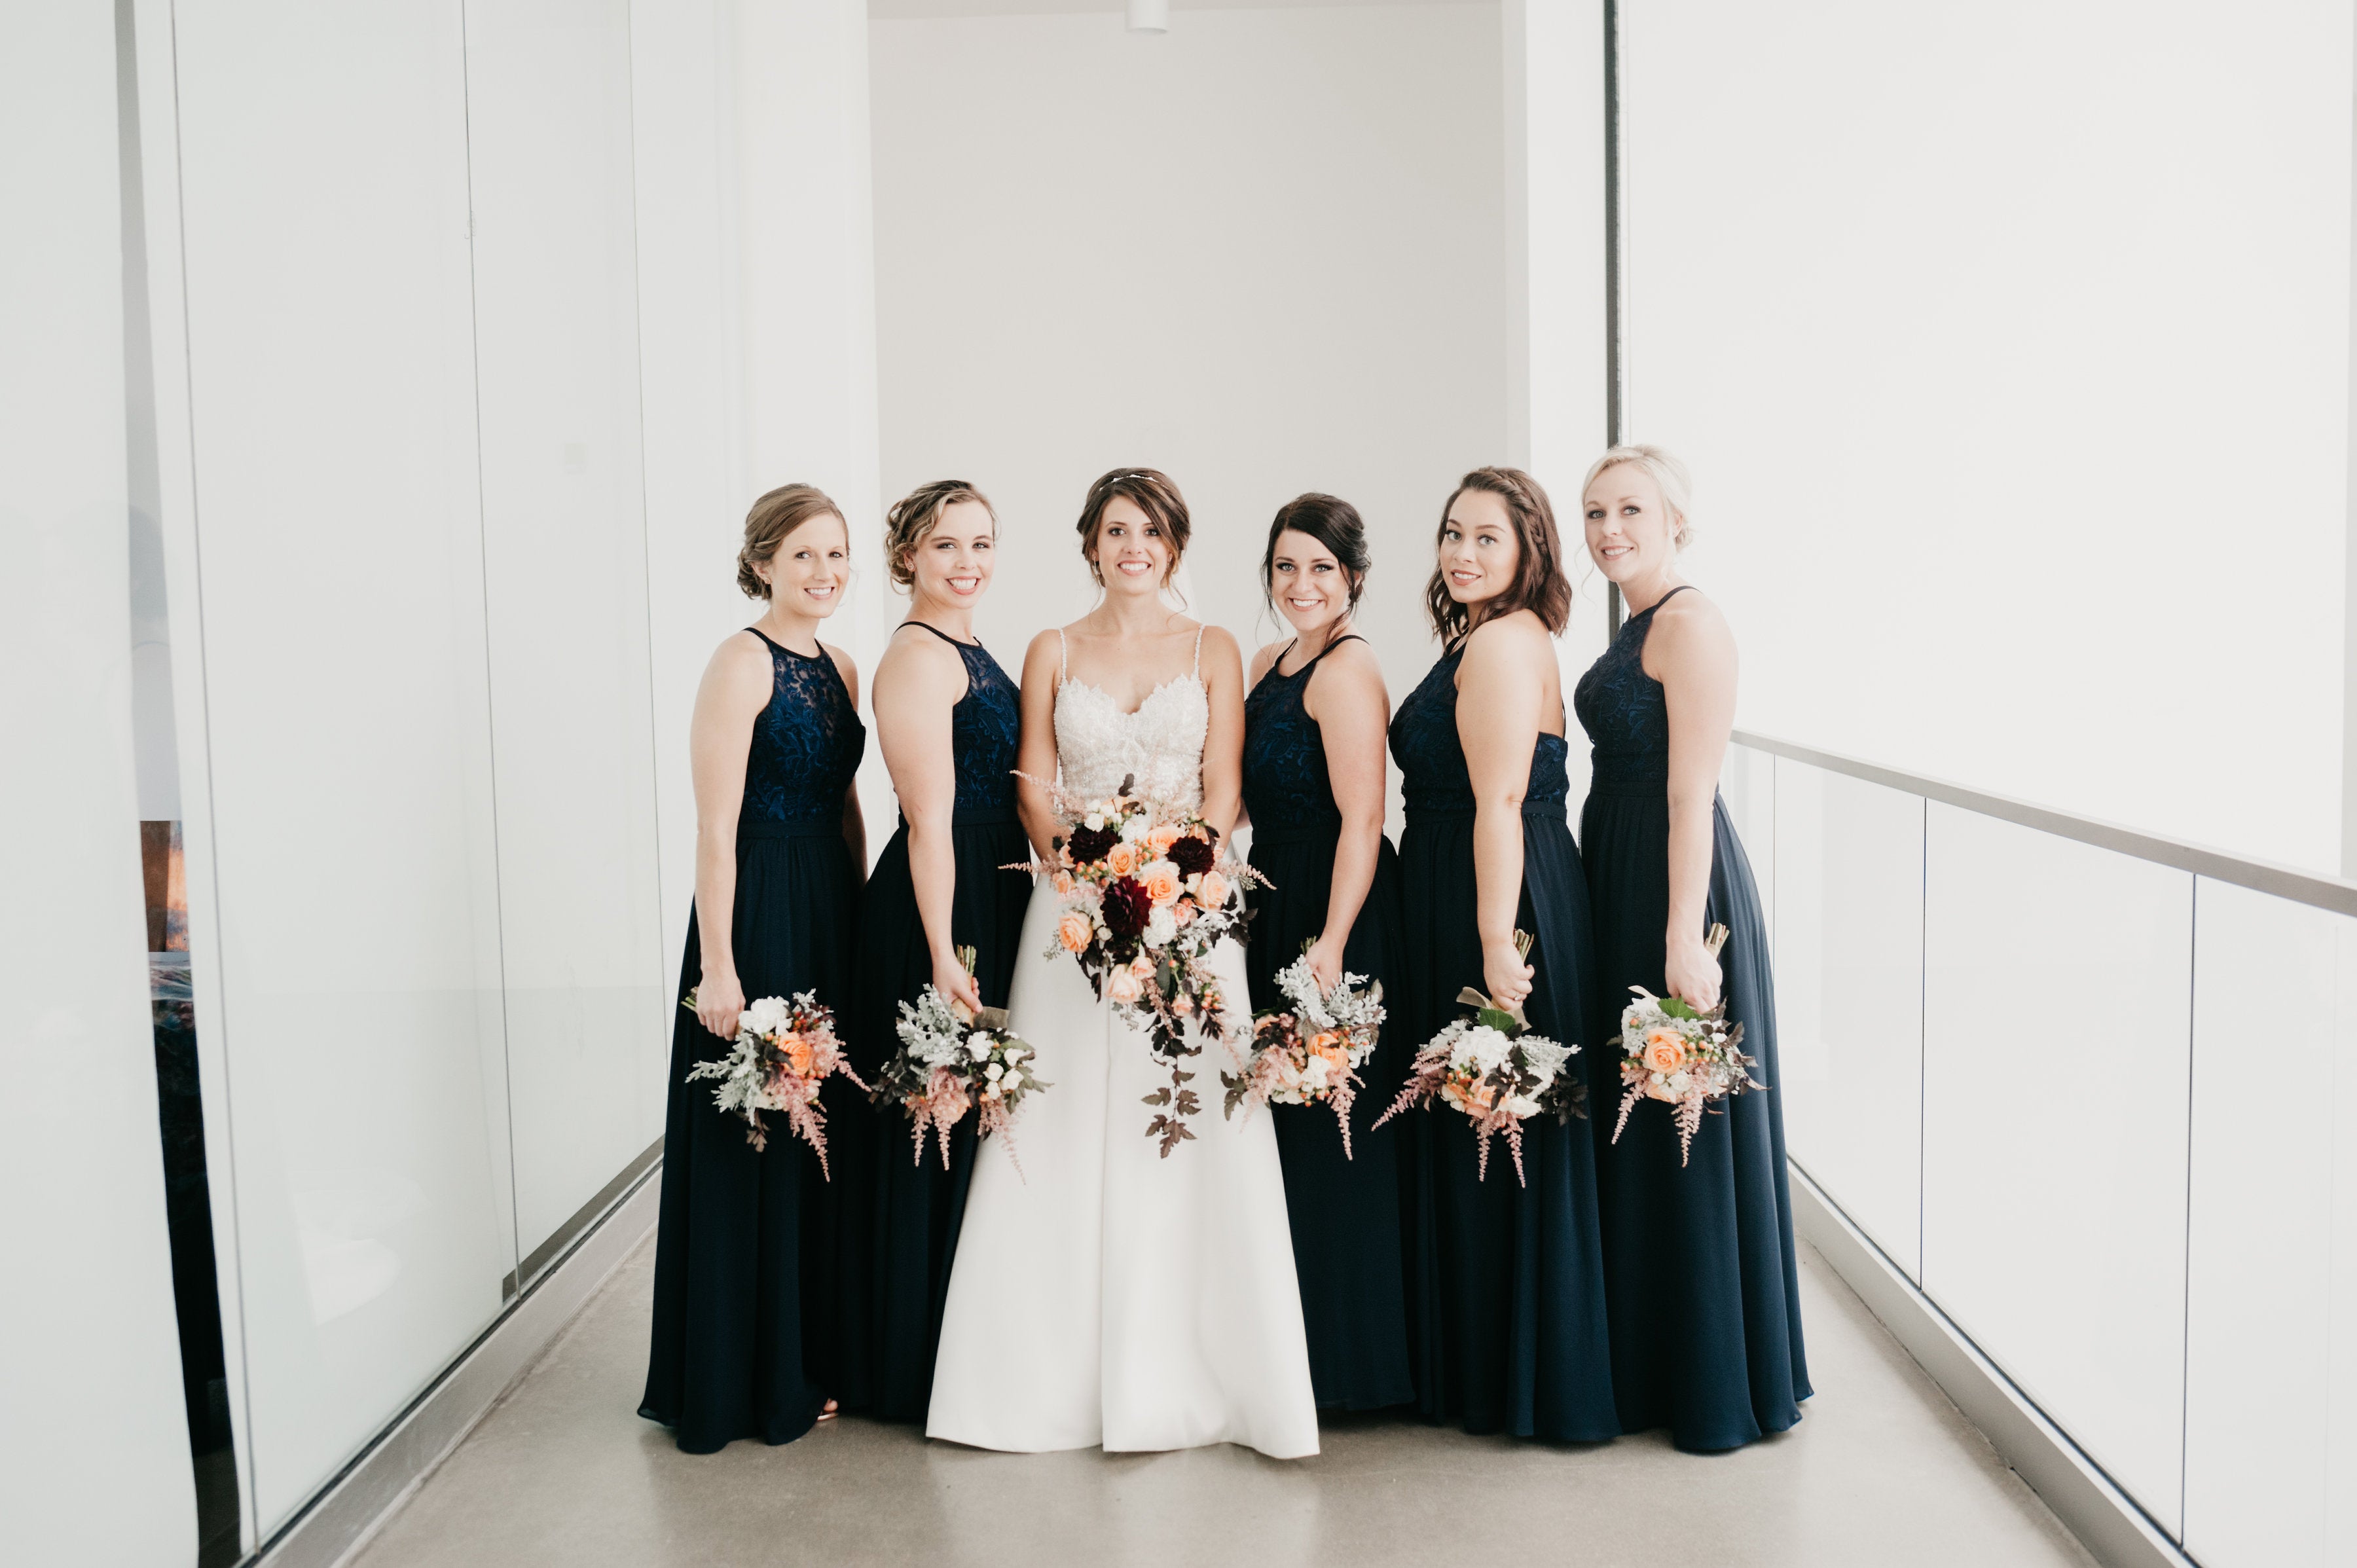 Stylish Long Navy Blue Bridesmaid Dresses – Wedding Shoppe